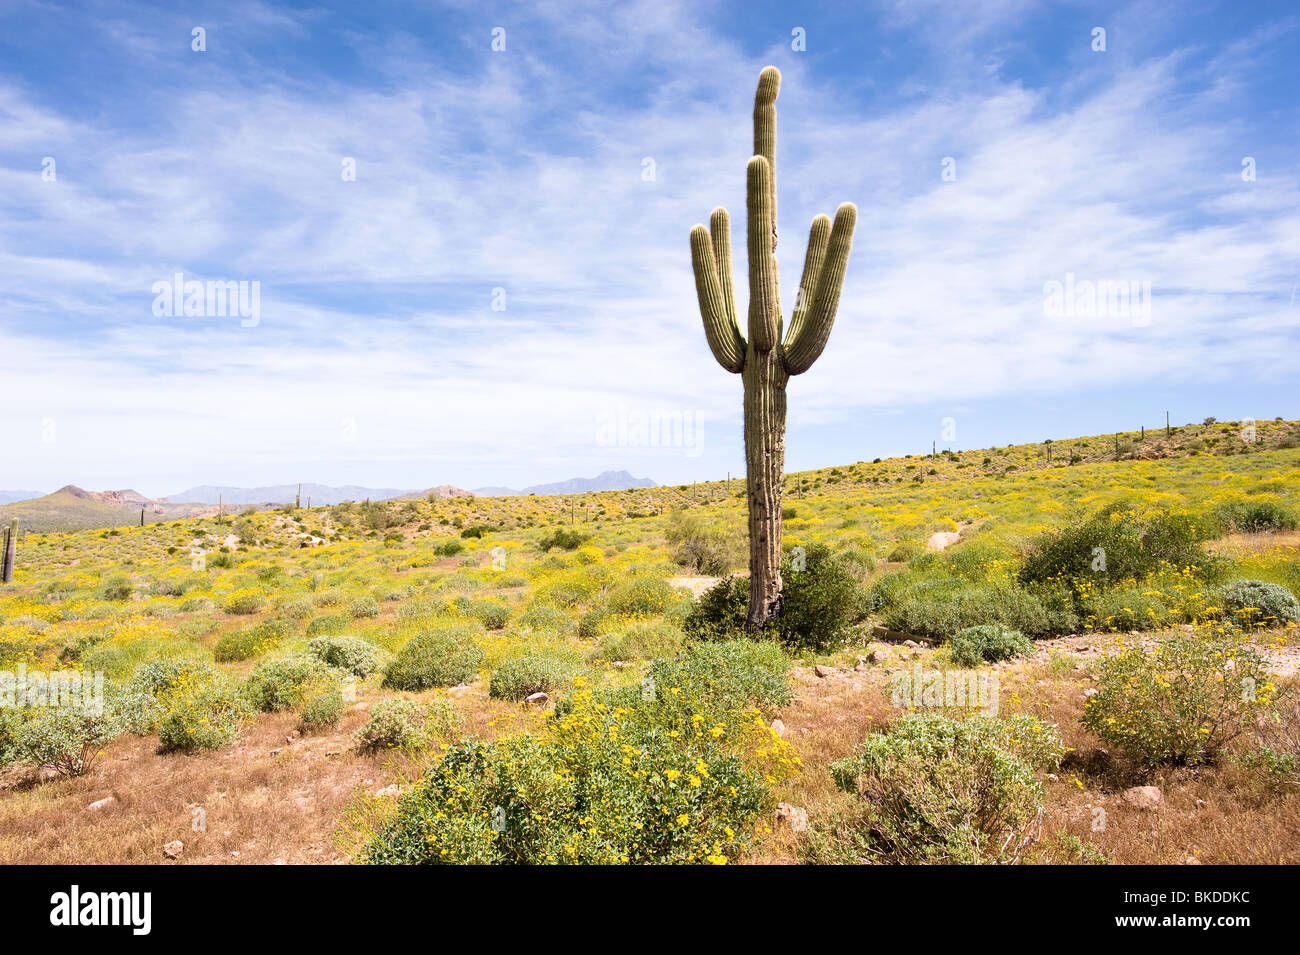 Un saguaro cactus dans un désert de l'Arizona est entouré de fleurs jaunes. Banque D'Images